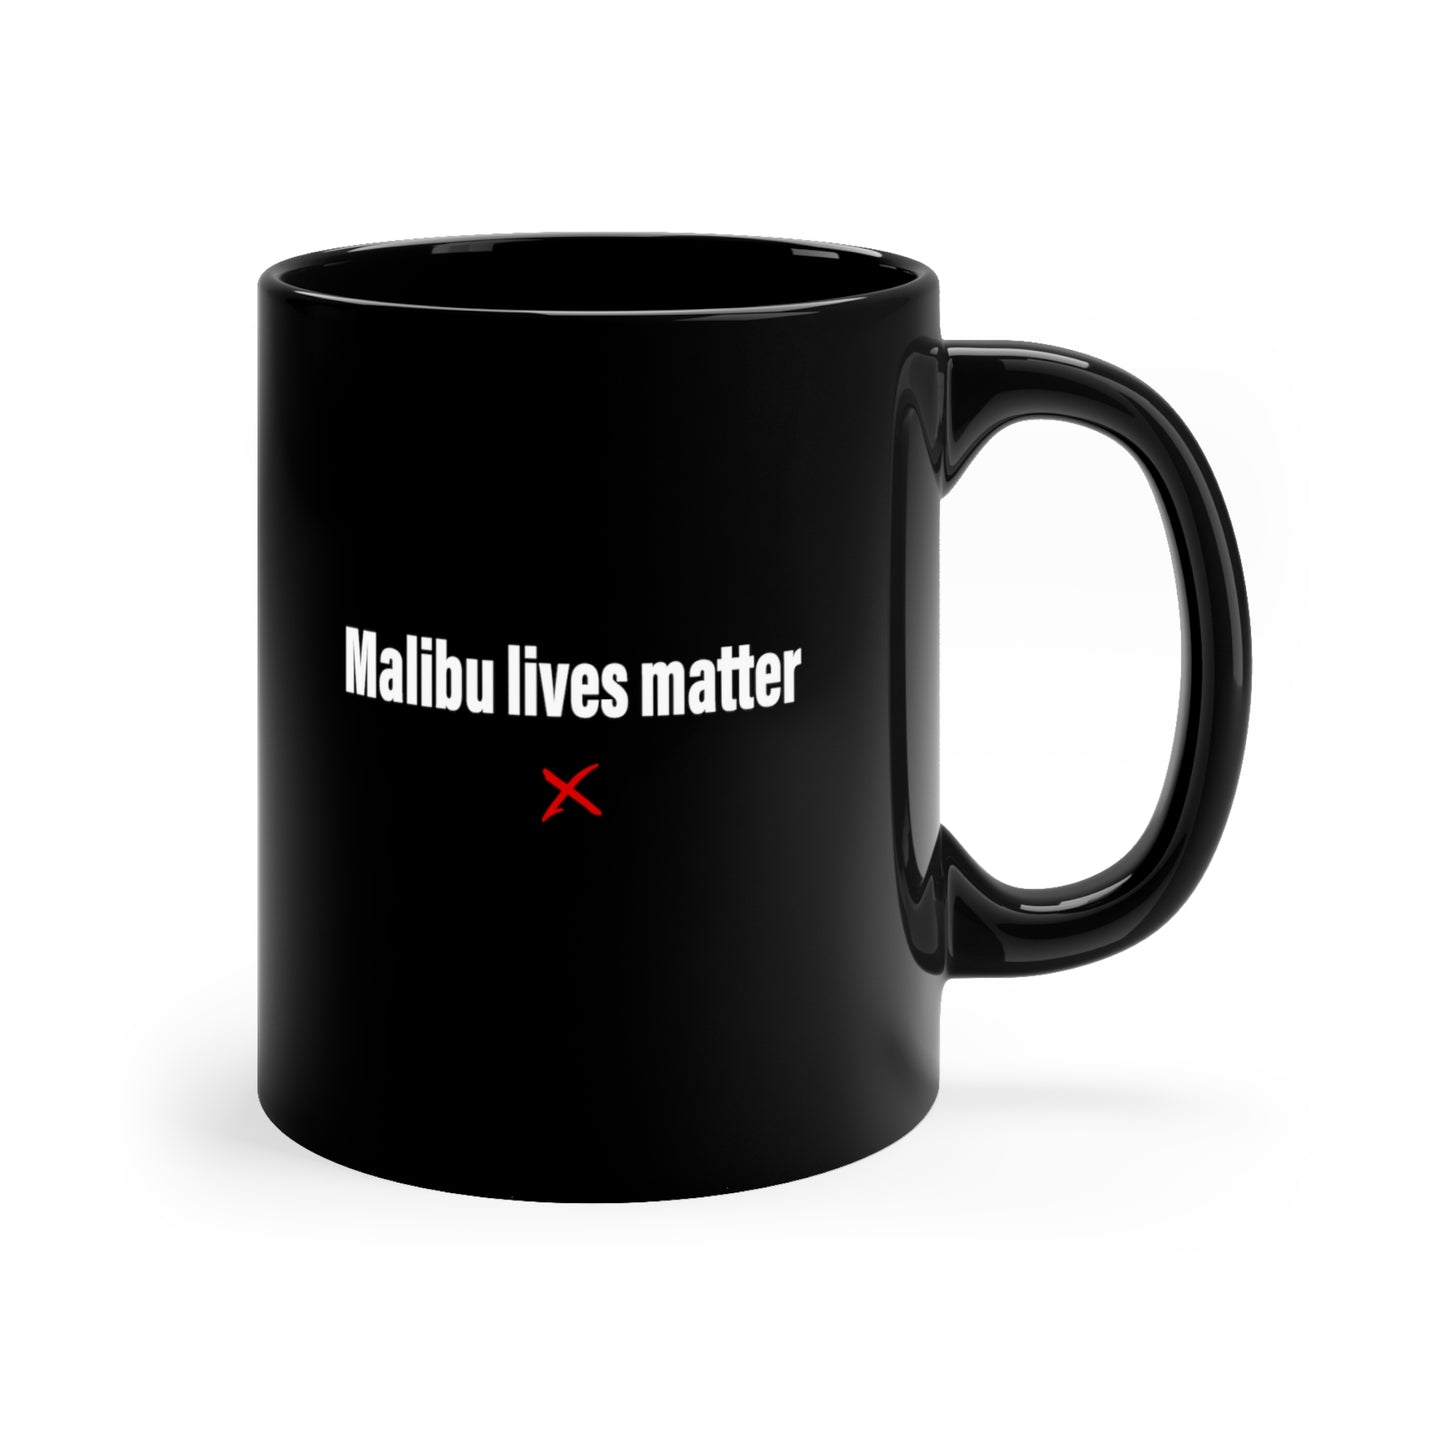 Malibu lives matter - Mug